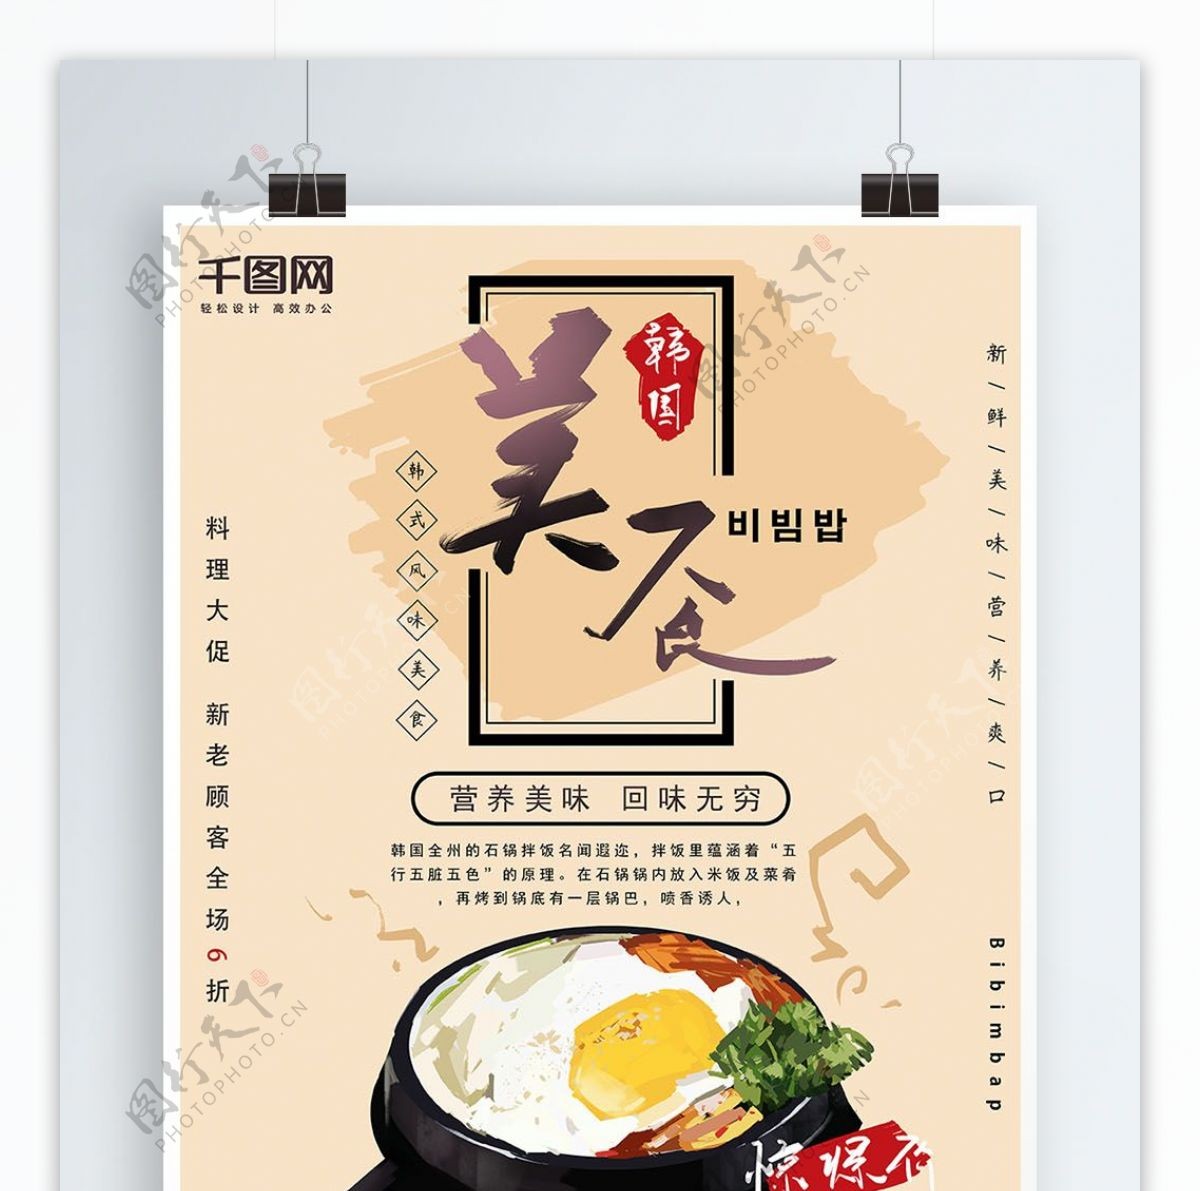 原创手绘韩国美食海报